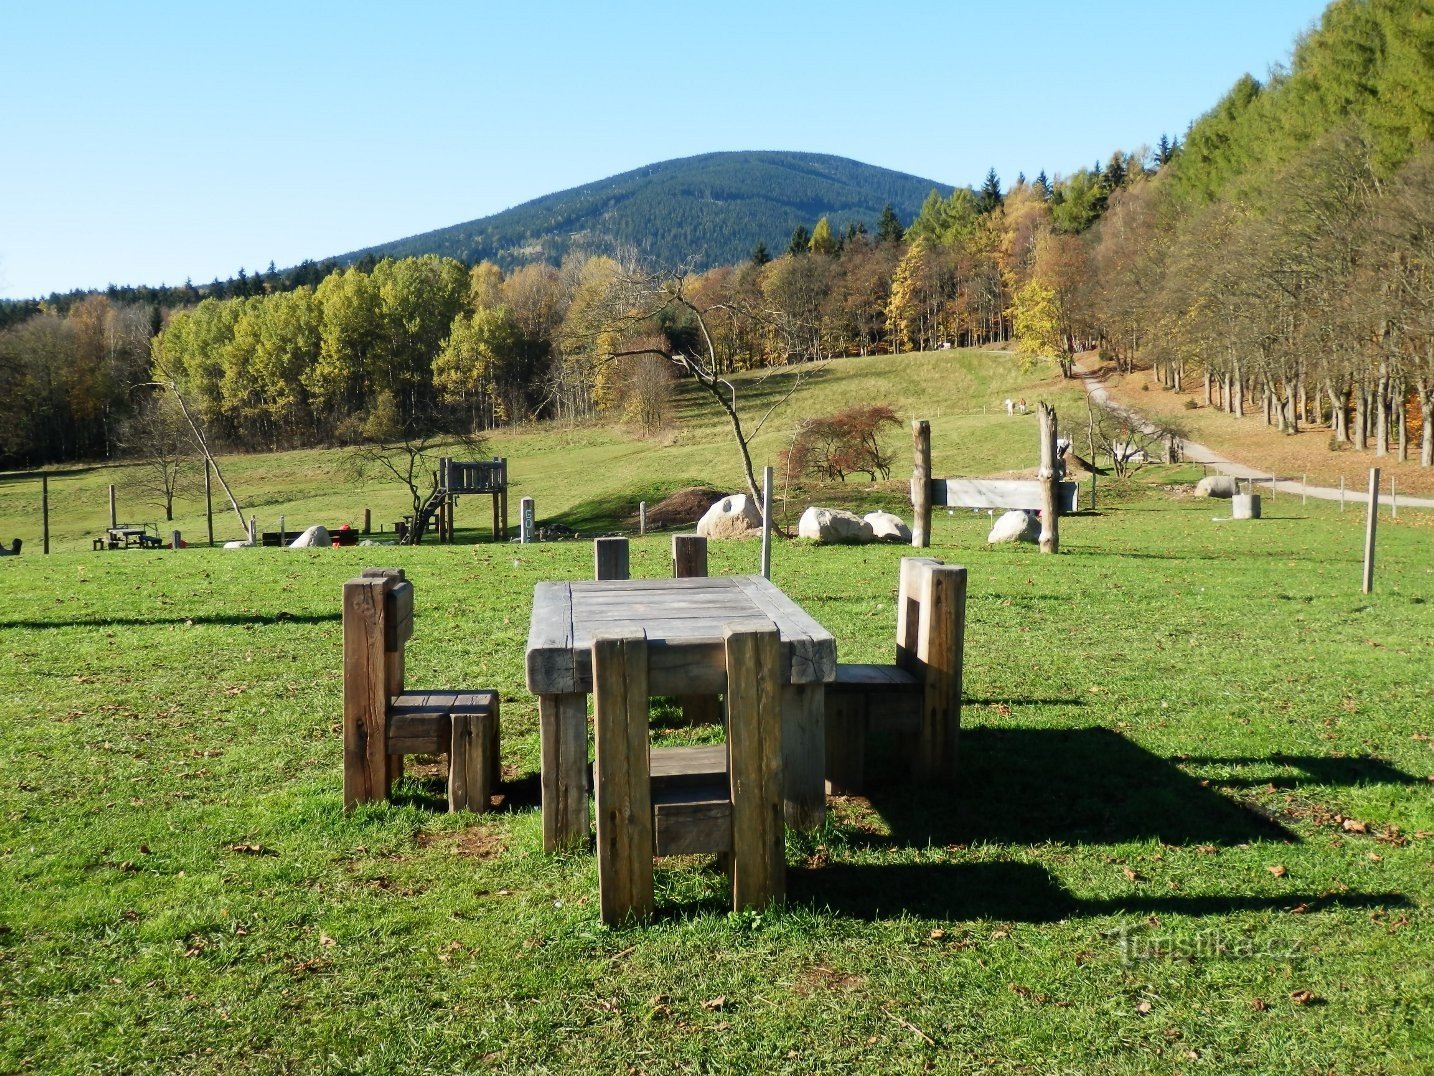 En del af gårdparken, Černá hora på bagsiden